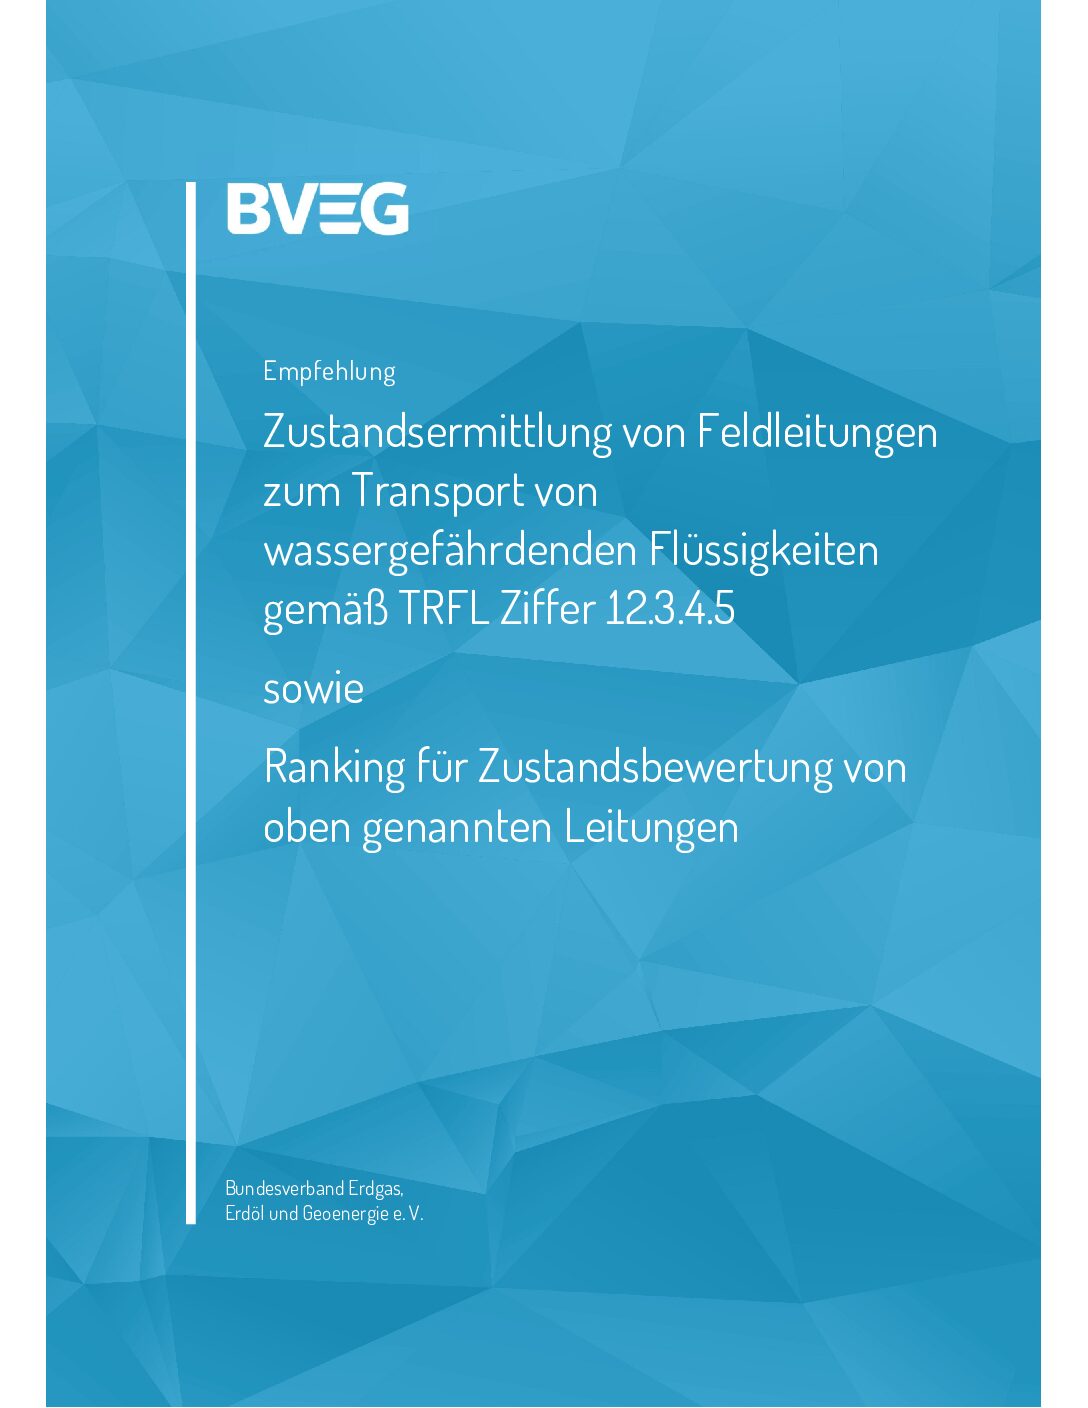 BVEG Leitfaden Ermittlung von Prüffristen an Feldleitungen Transport wassergef. Flüssigkeiten – Ranking Zustandsbewertung